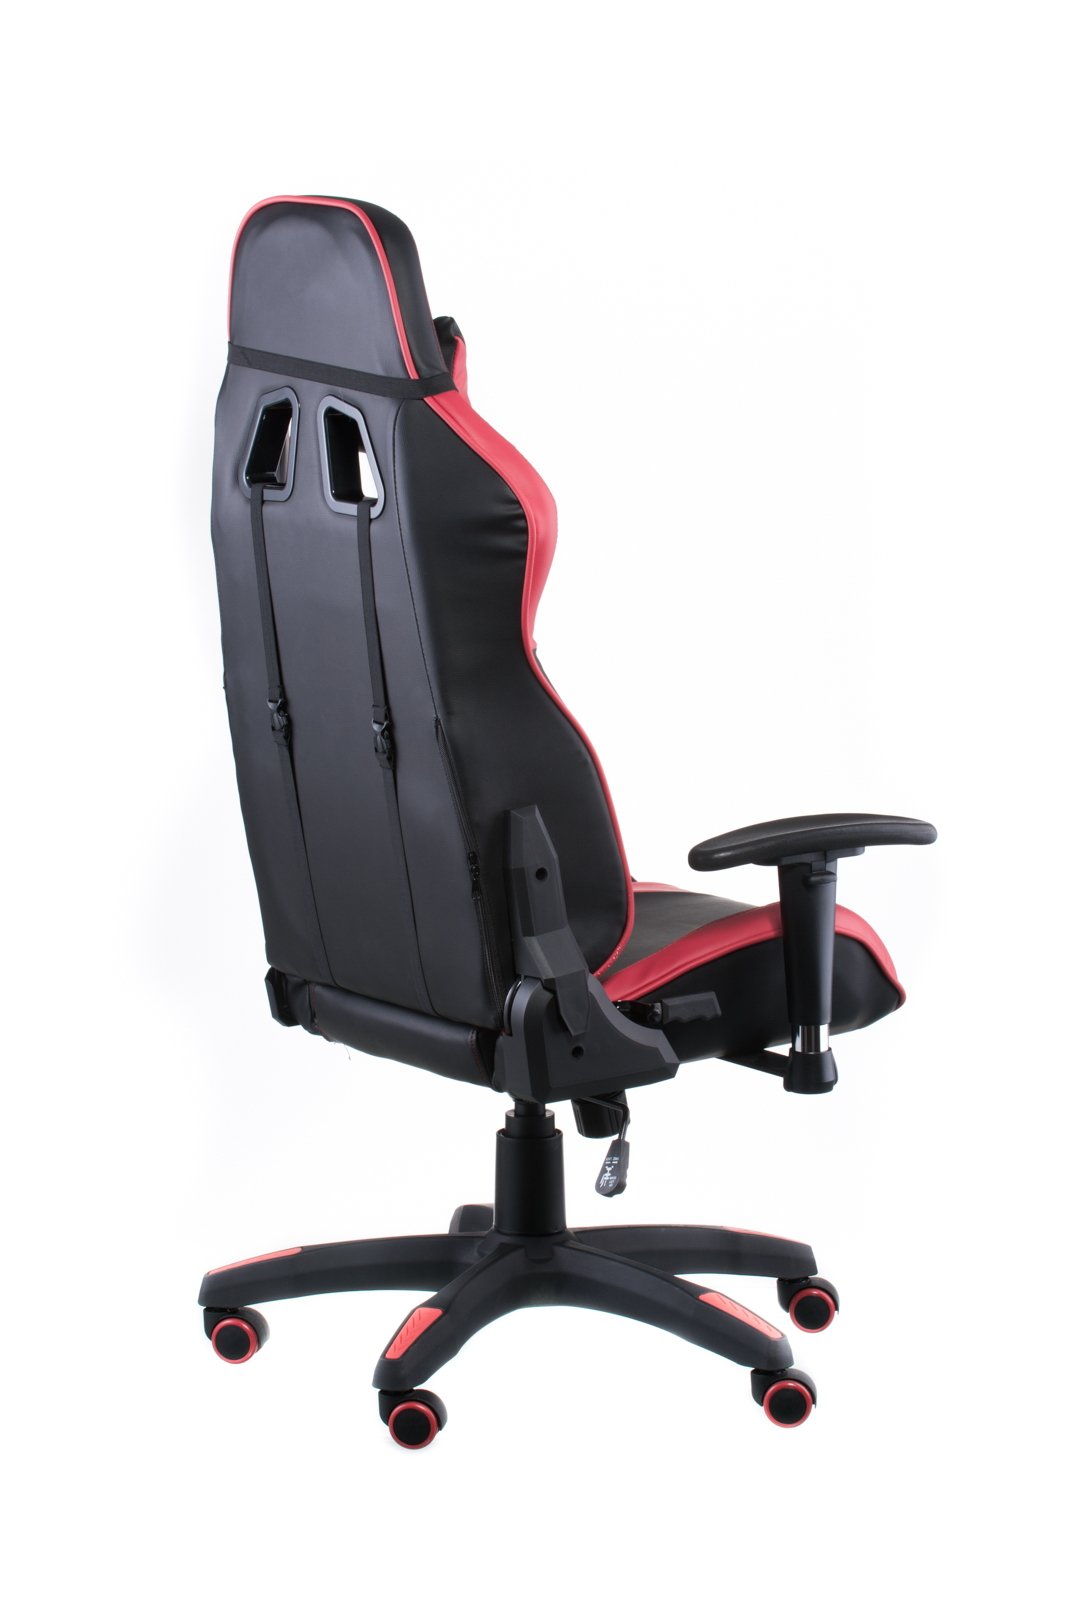 Геймерское кресло Special4you ExtremeRace черное с красным (E4930) - фото 5